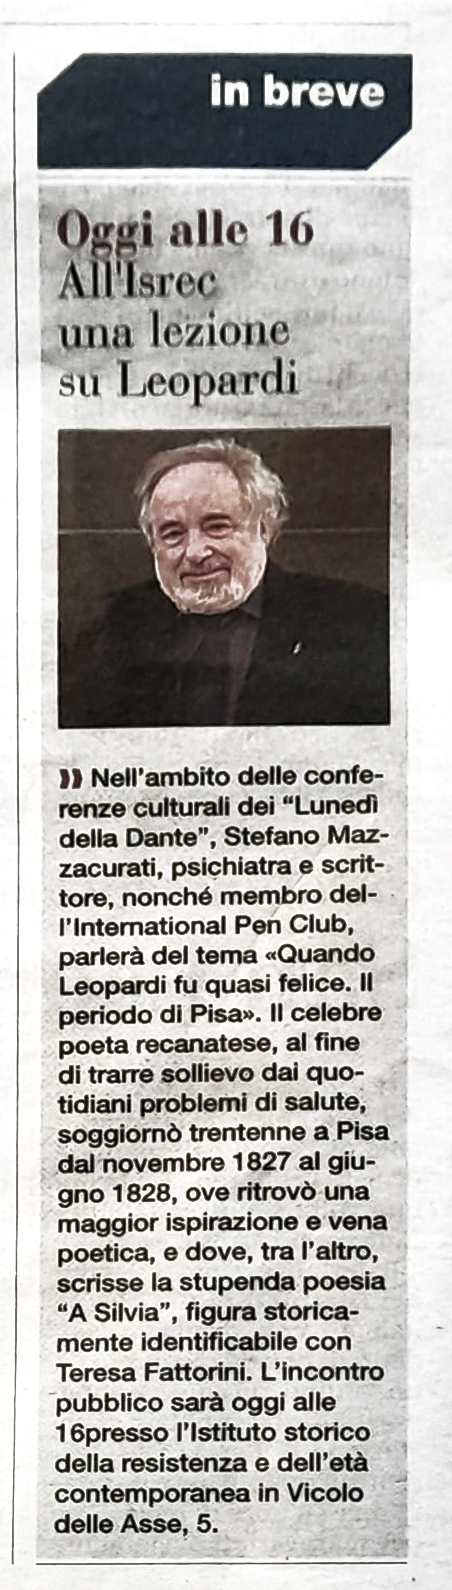 La Gazzetta di Parma del 3 aprile 2023 presenta la conferenza del dott. Stefano Mazzacurati